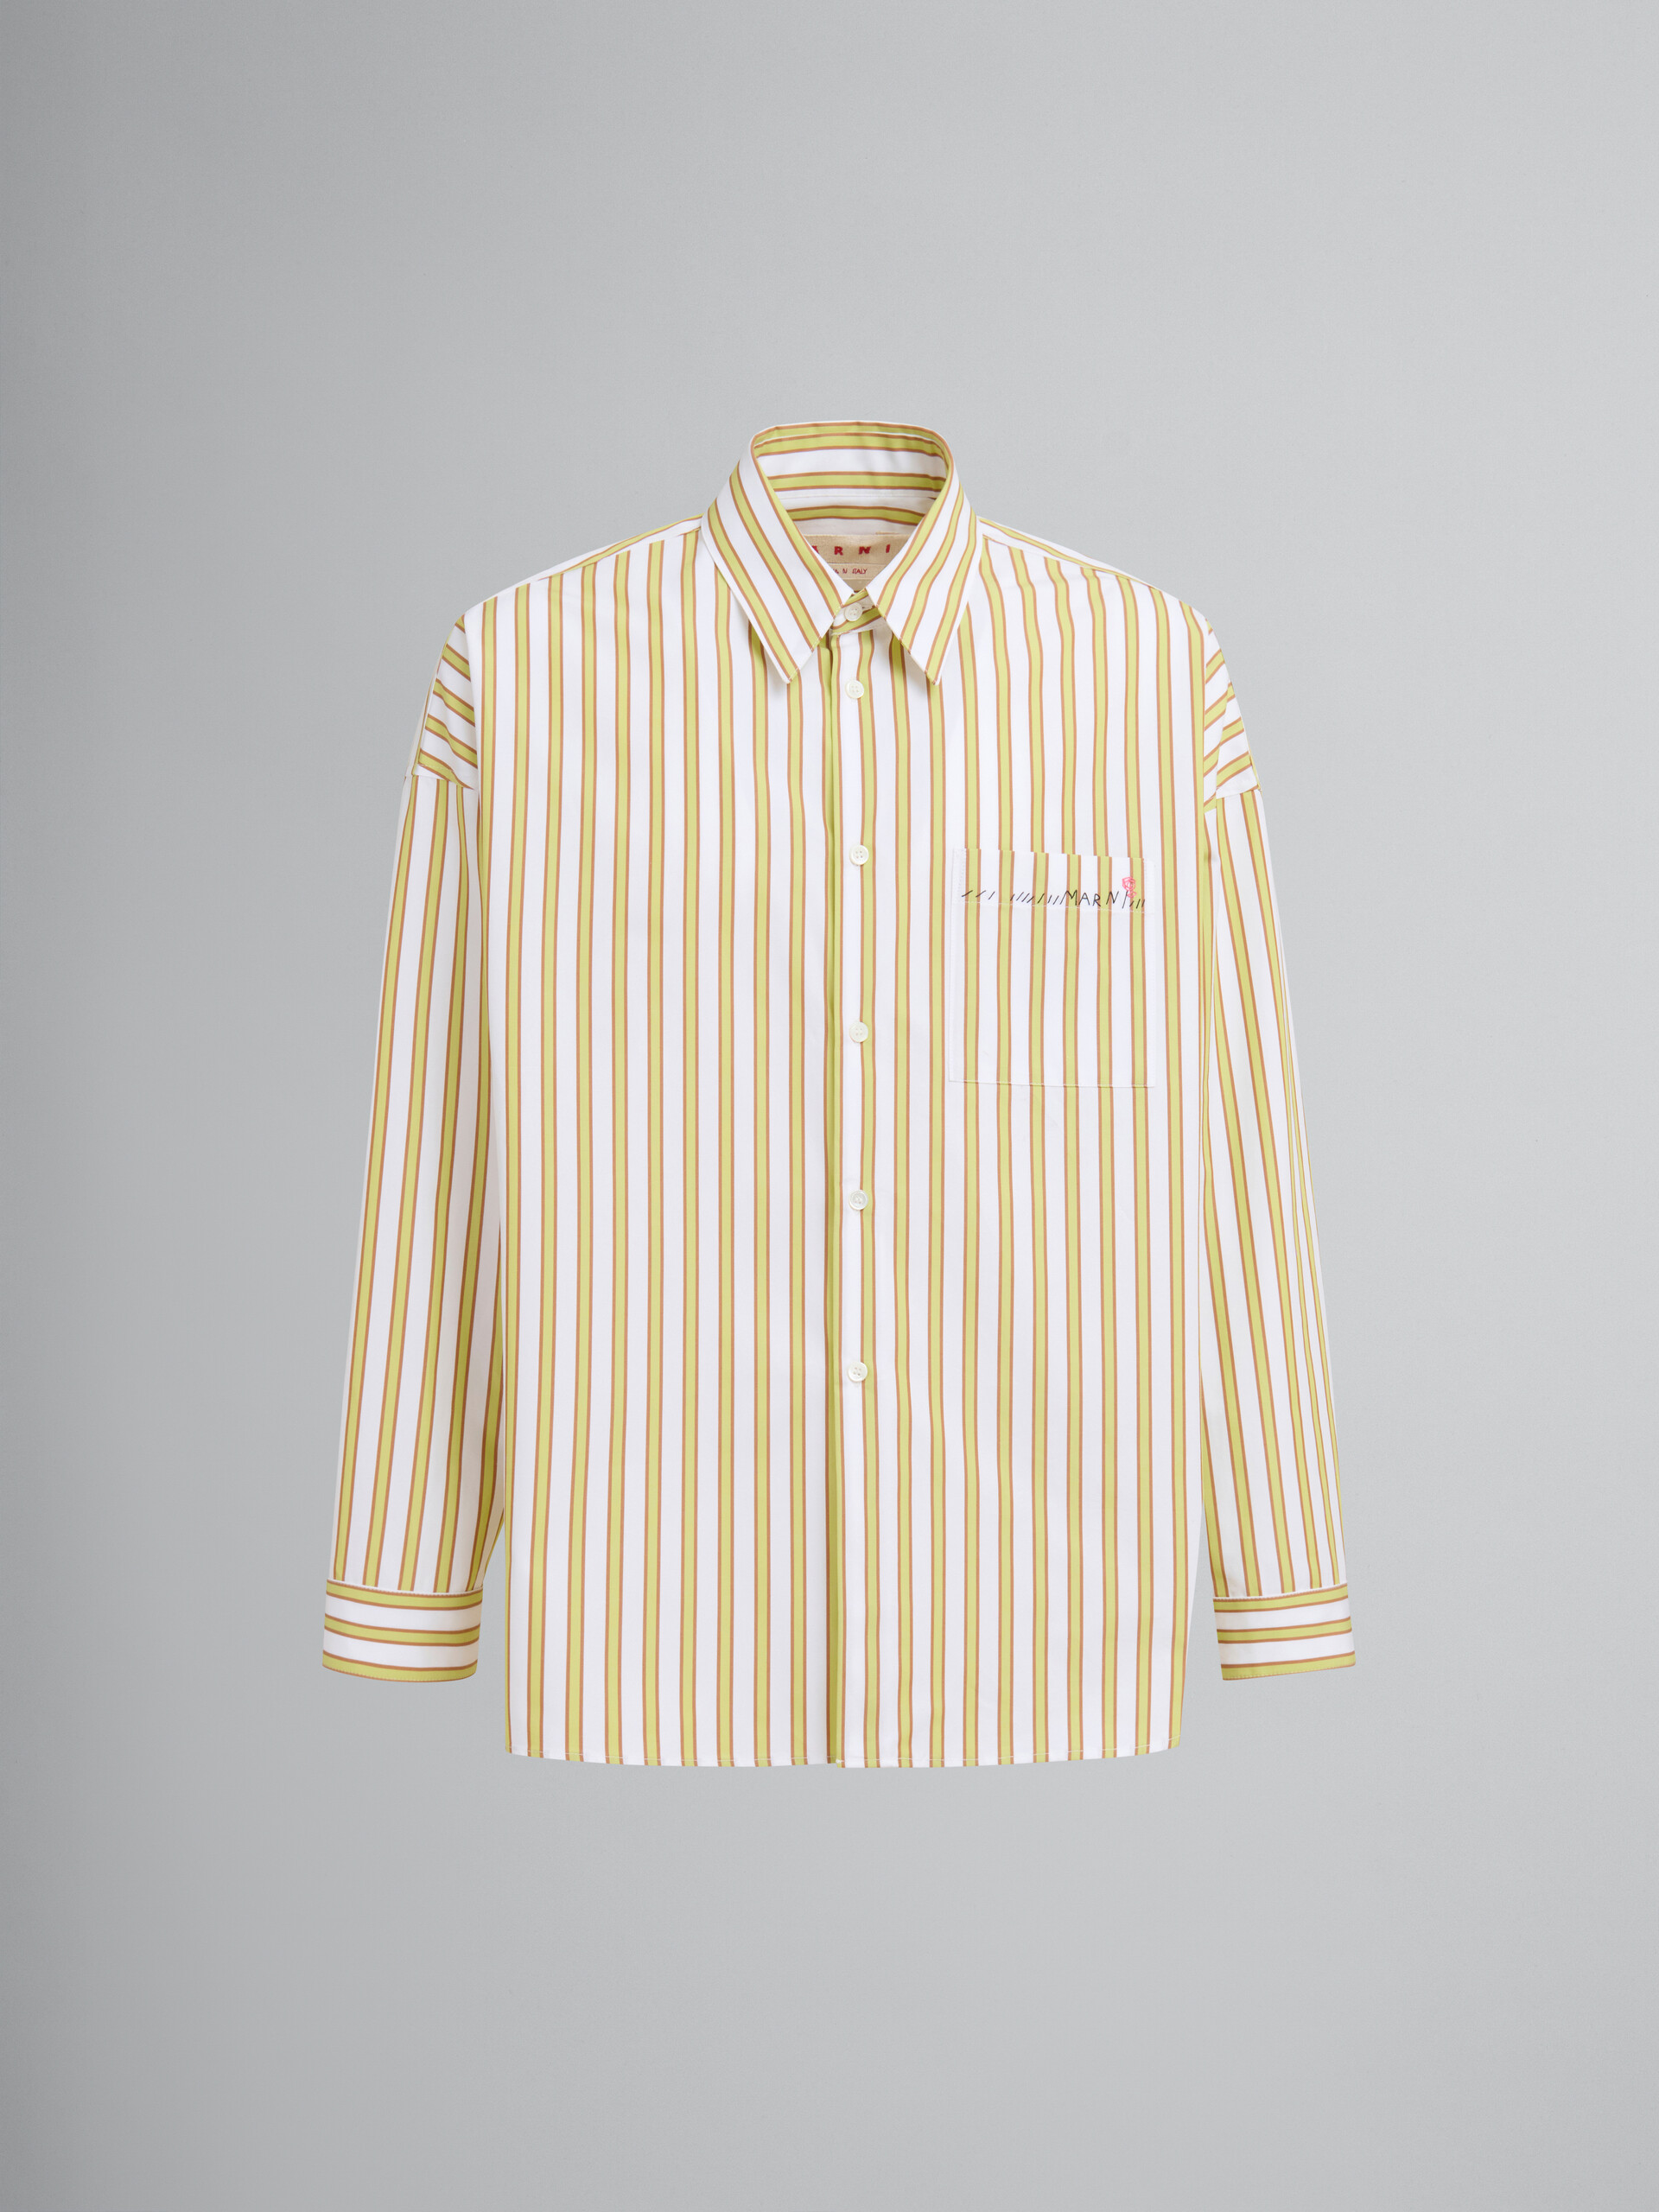 Camisa de popelina ecológica a rayas naranjas y amarillas - Camisas - Image 1